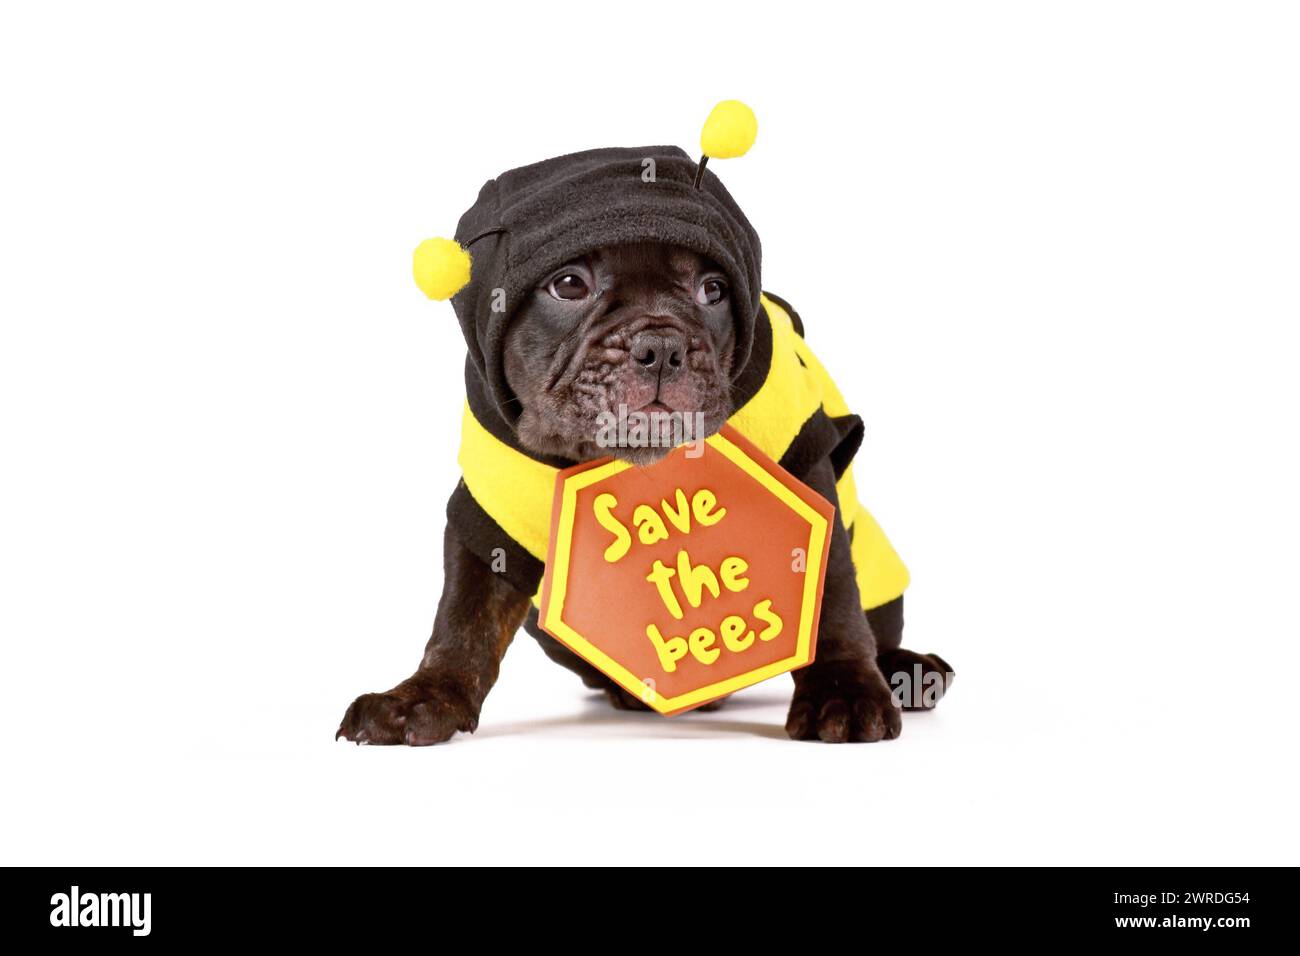 Cucciolo di cane Bulldog francese vestito con costume da ape e cartello "Save the Bees" su sfondo bianco Foto Stock